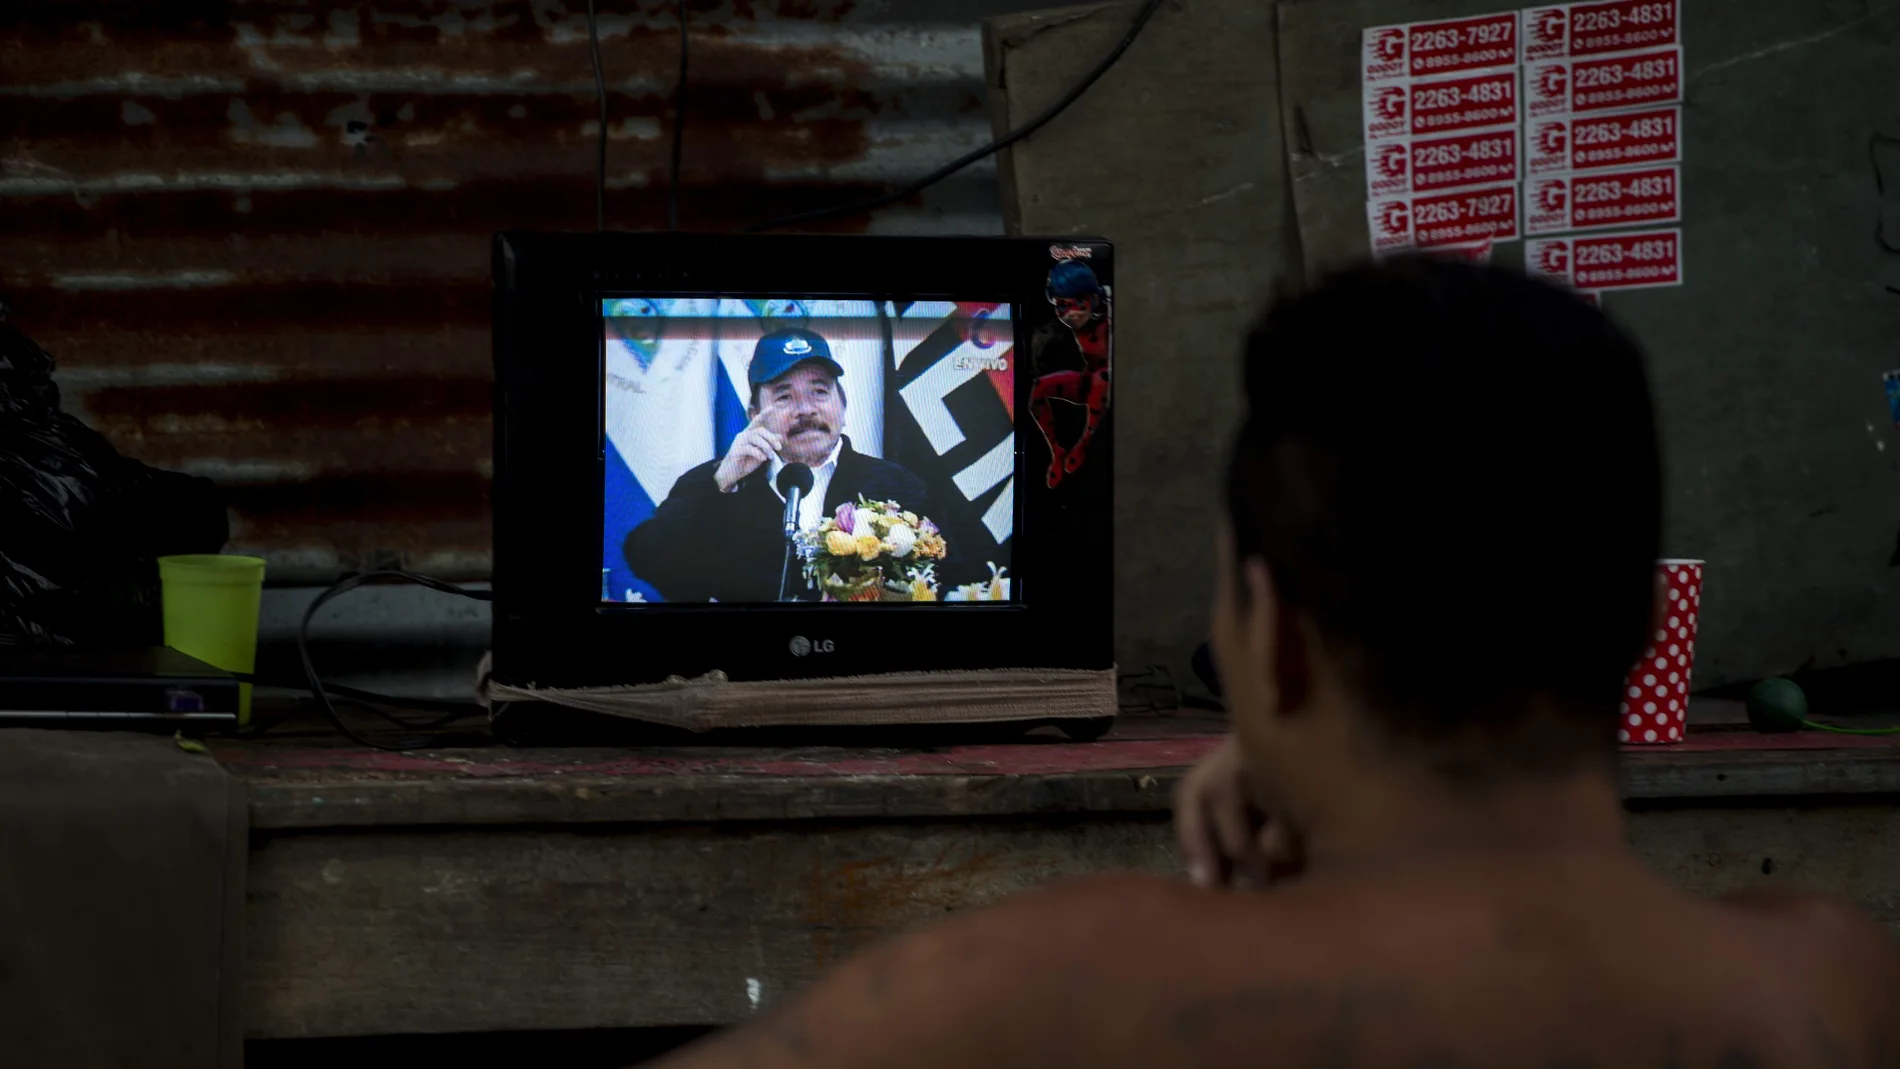 Ortega reaparece en TV tras 34 días y defiende estrategia frente a pandemia